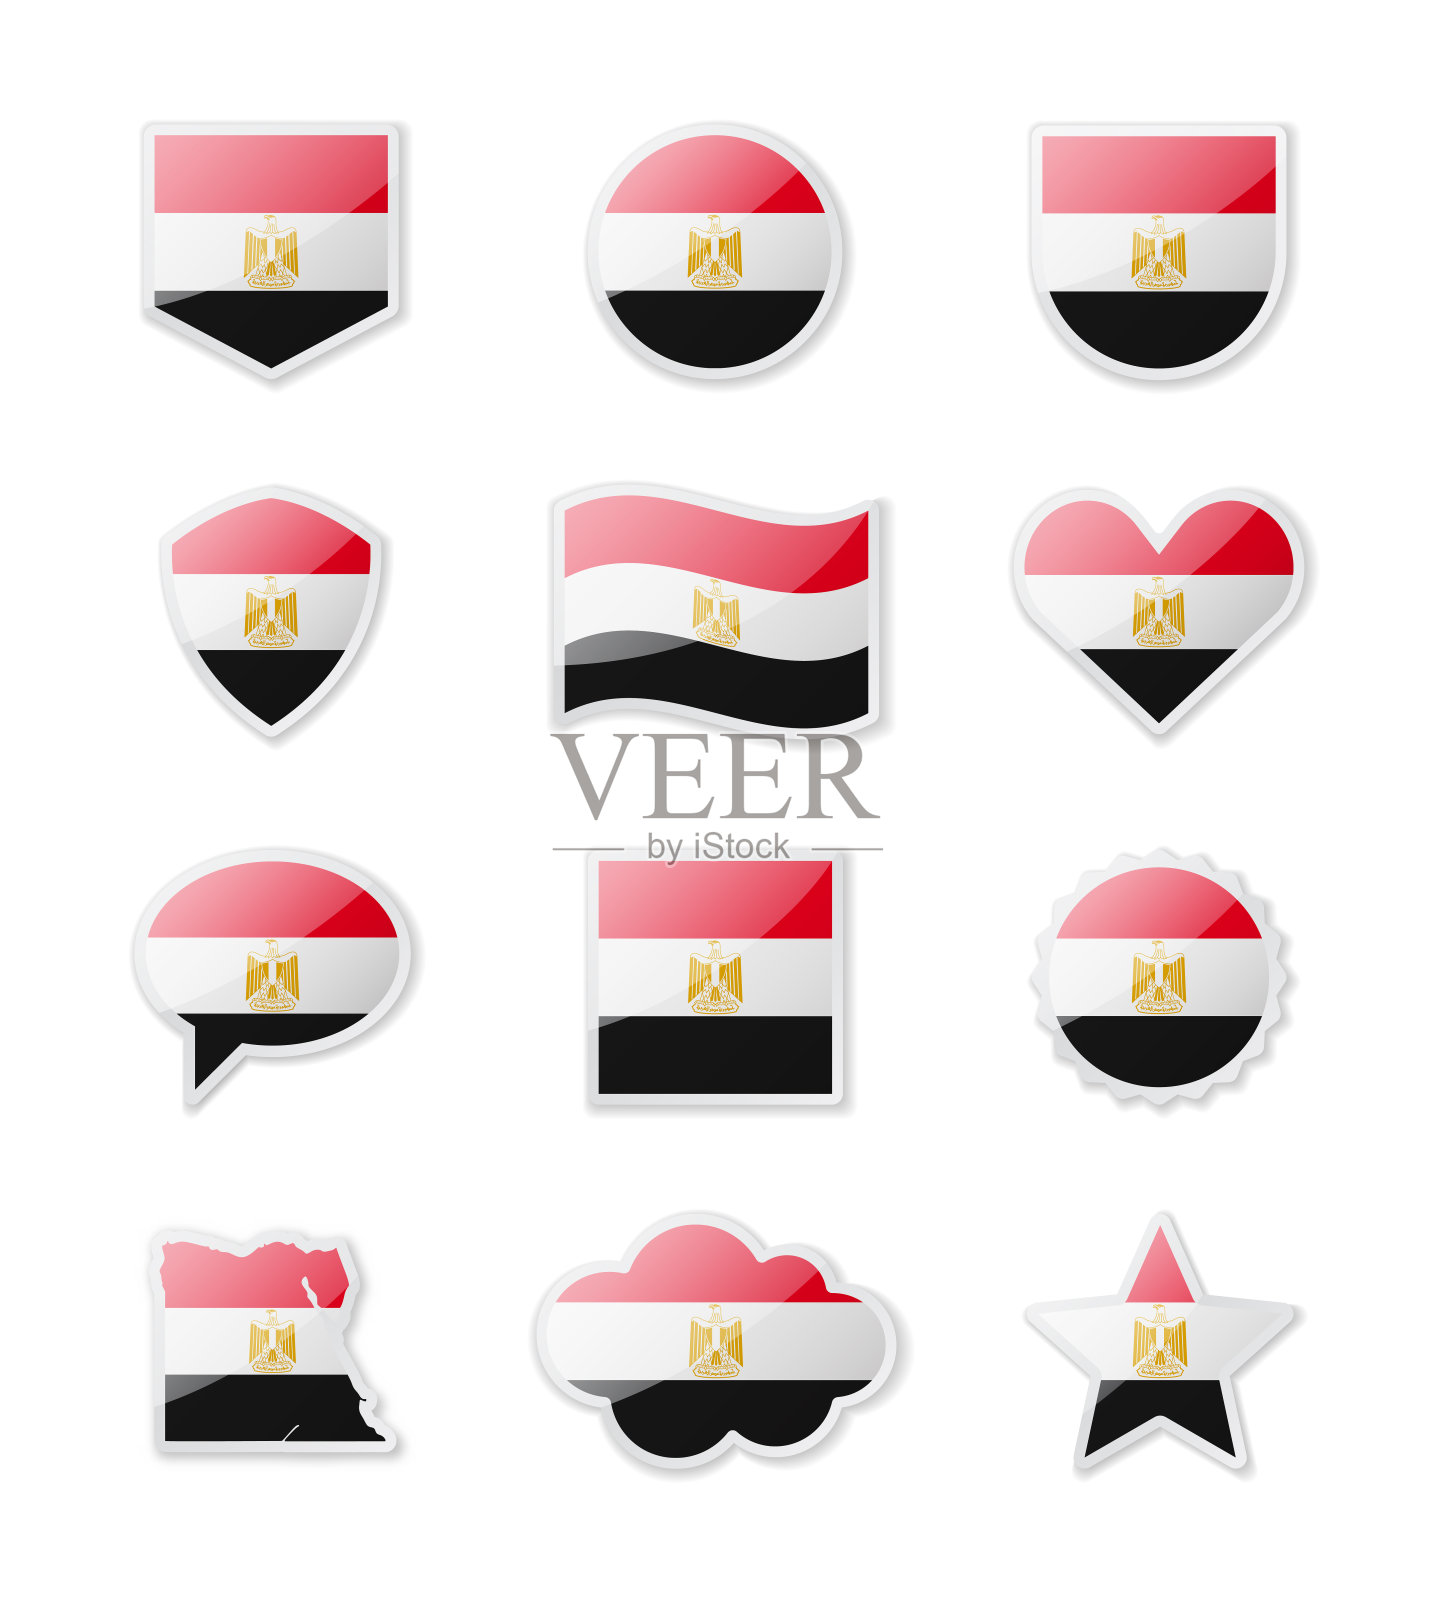 埃及国旗_埃及国旗图片 - 电影天堂